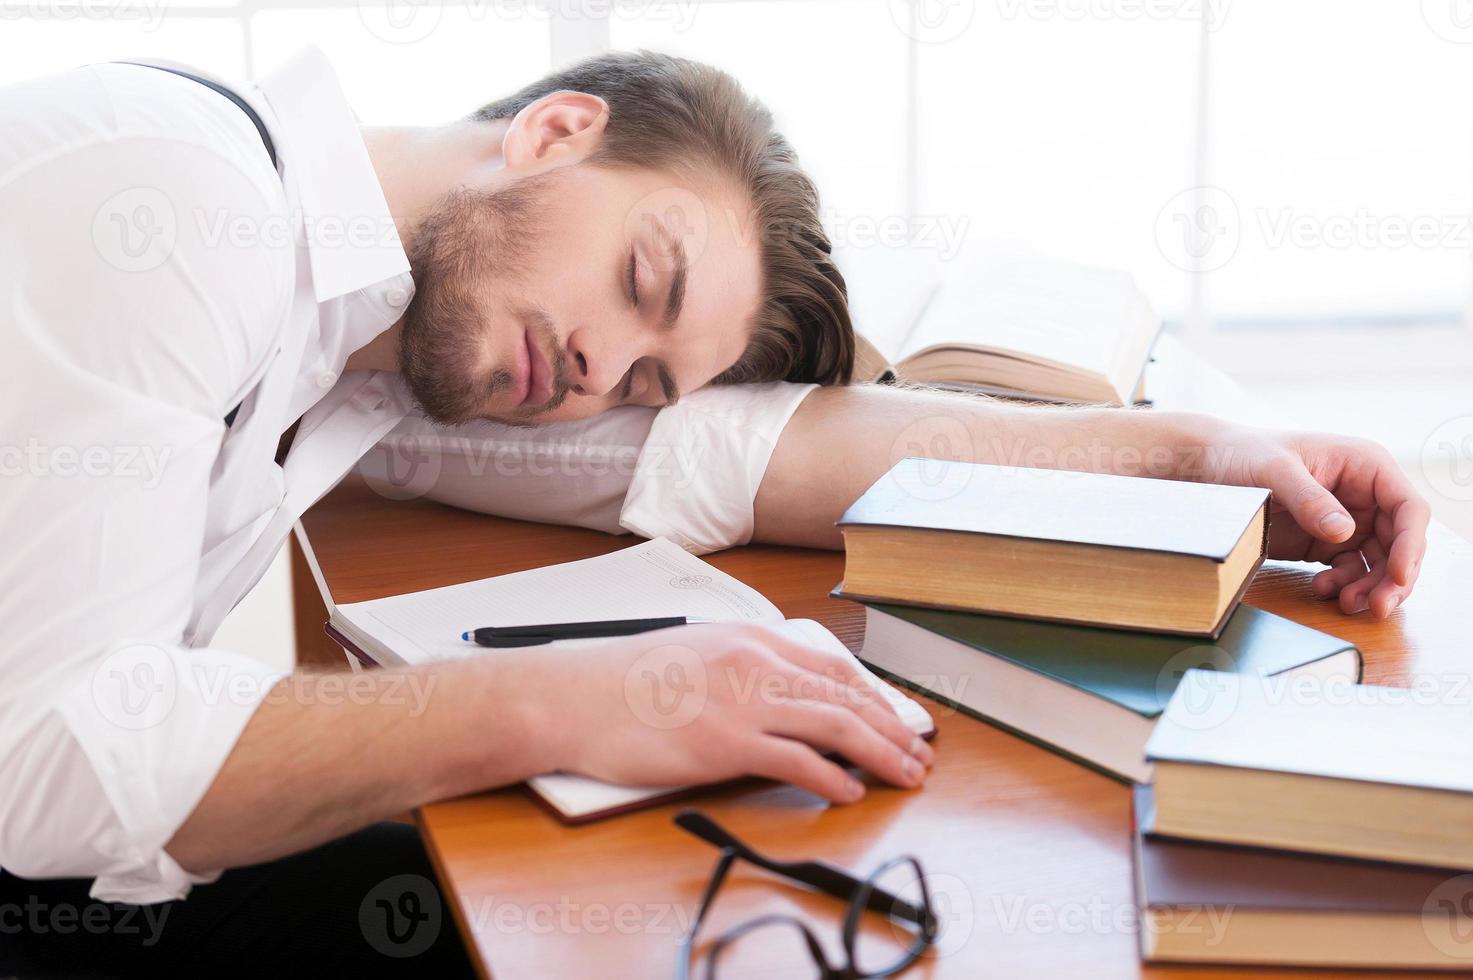 fatigué après une nuit de recherche. vue arrière d'un jeune homme réfléchi en chemise et bretelles assis sur la table et lisant un livre posé dessus photo